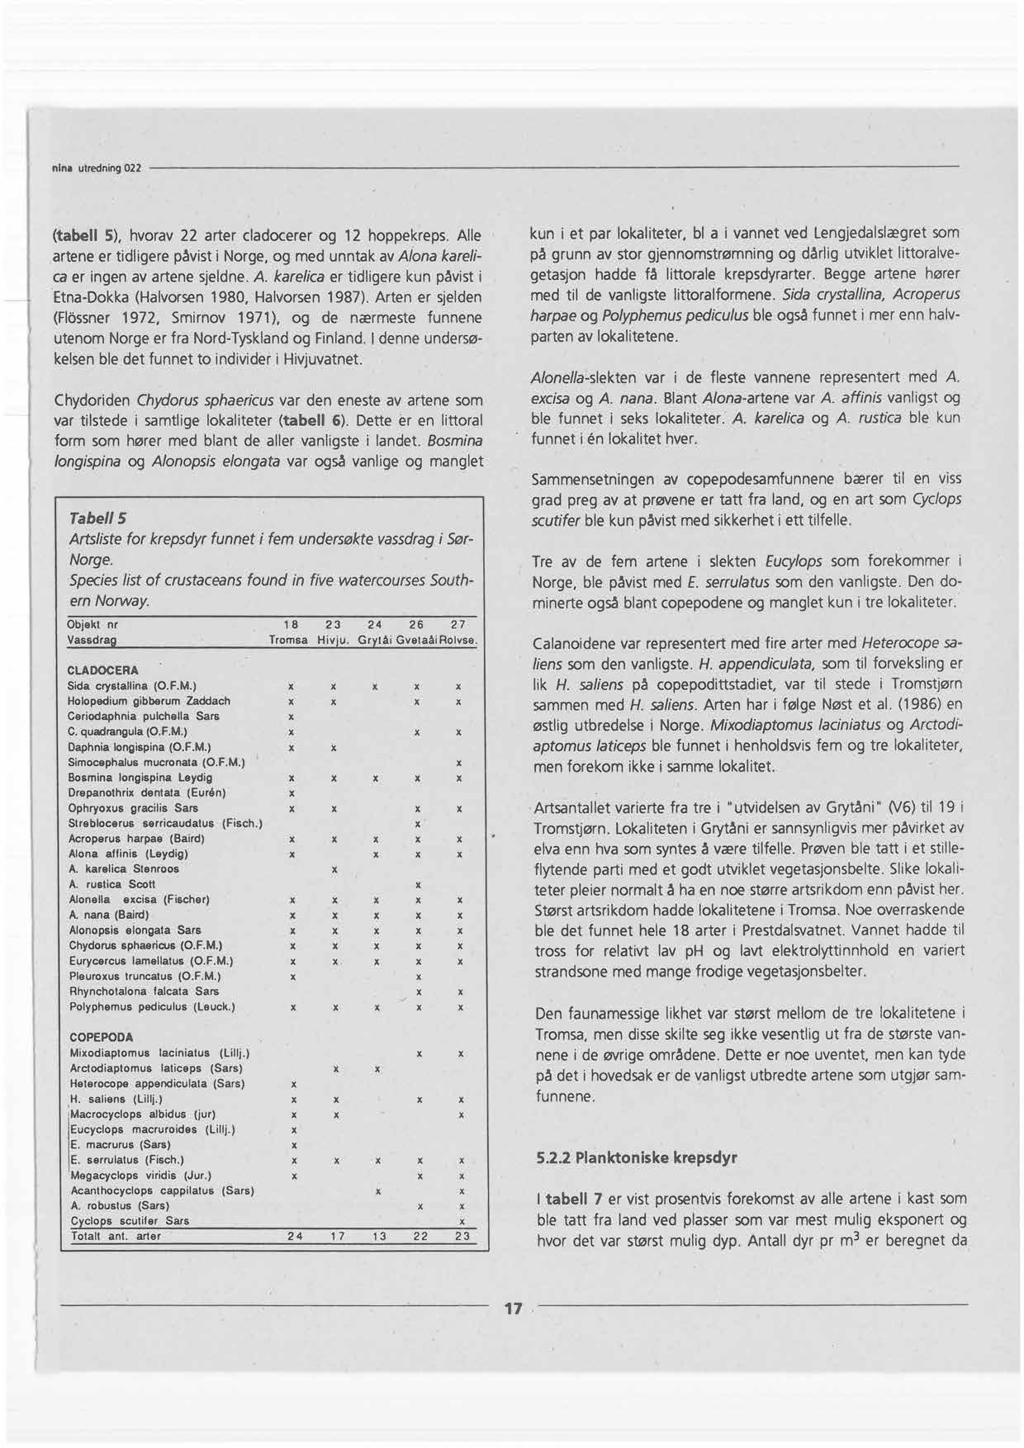 nina utredning022 (tabell 5), hvorav 22 arter cladocerer og 12 hoppekreps. Alle artene er tidligere påvisti Norge, og med unntak avalona karelica er ingen av artene sjeldne.a. karelica er tidligere kun påvist i Etna-Dokka(Halvorsen1980, Halvorsen 1987).